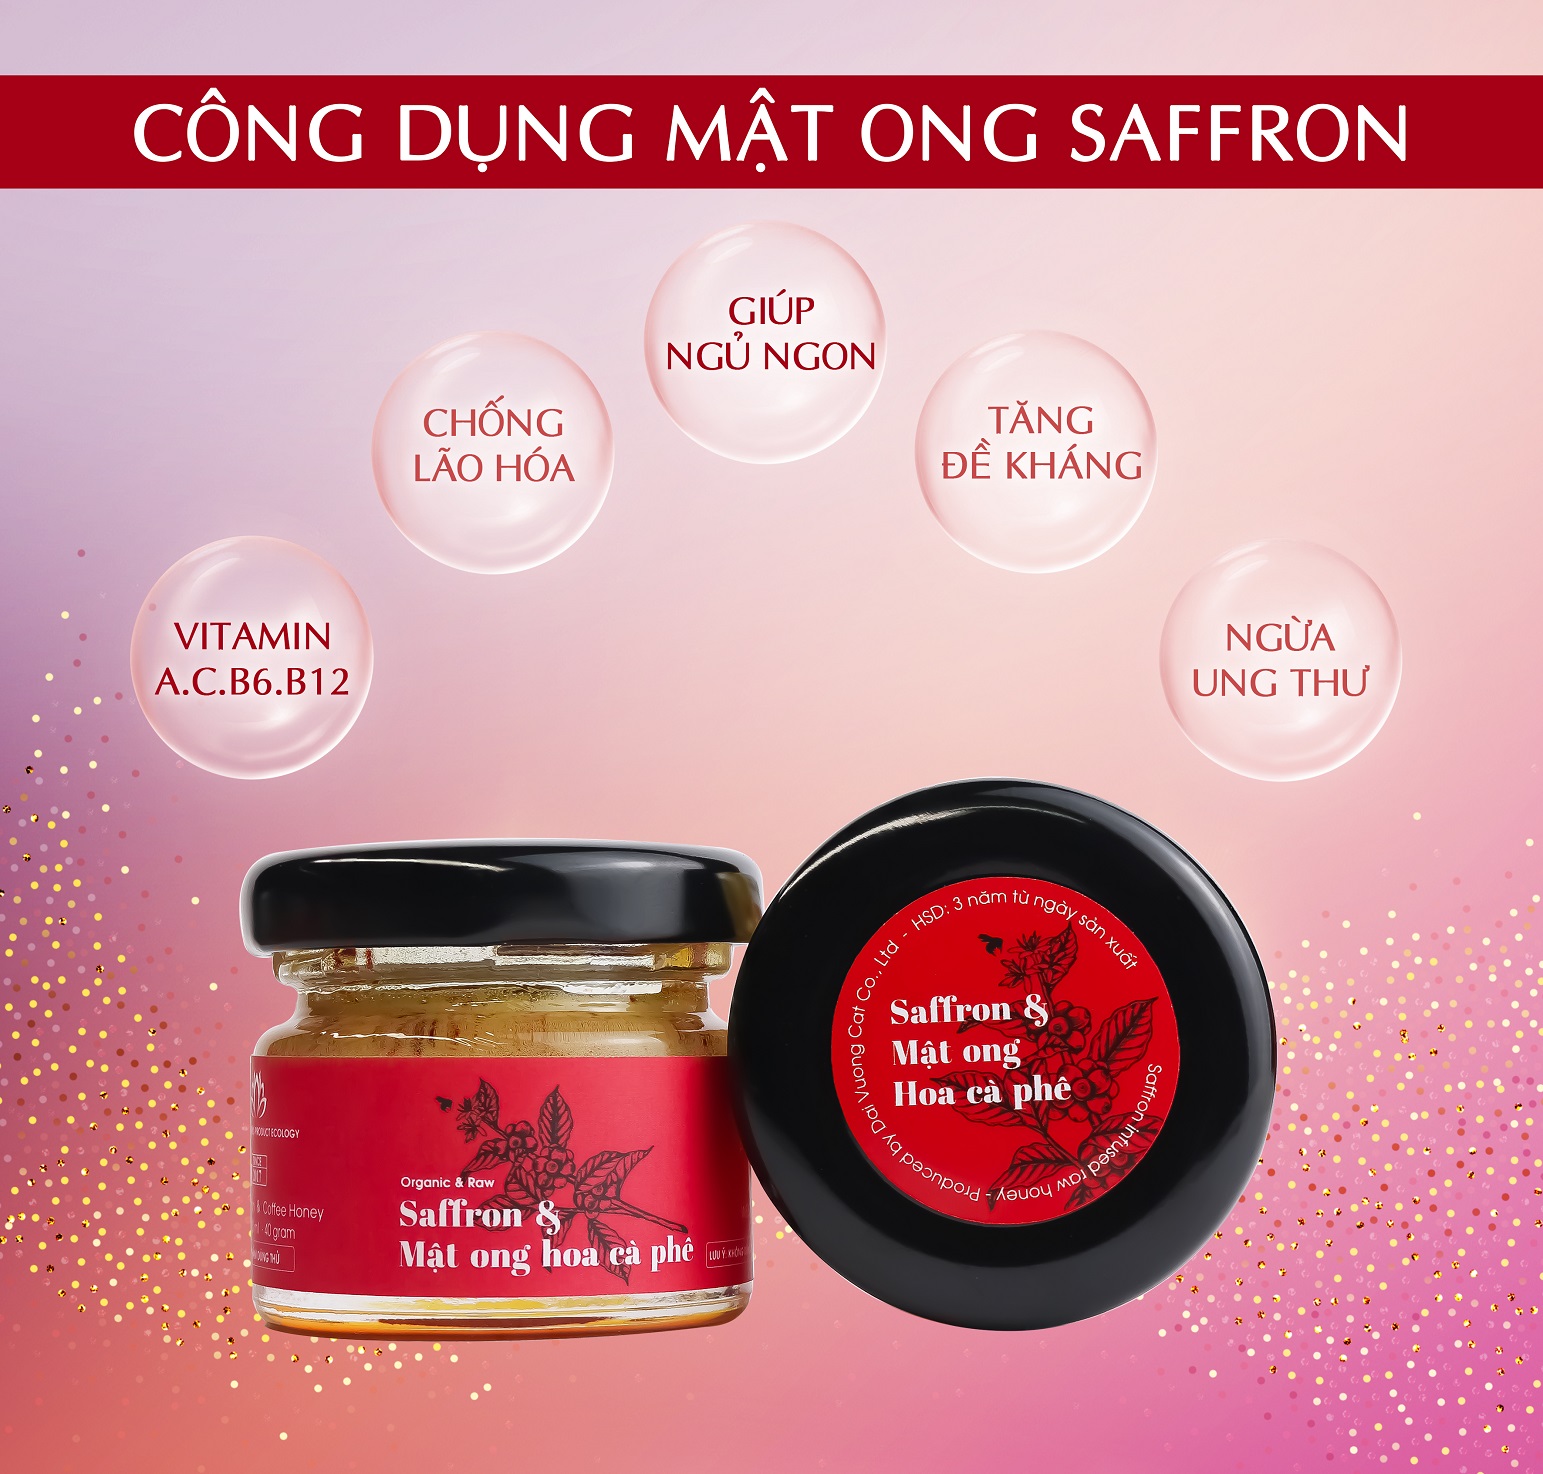 Saffron ngâm mật ong Kingdom Herb chính hãng thượng hạng nguyên chất 100% hộp 40g (Tặng bình nước thủy tinh)